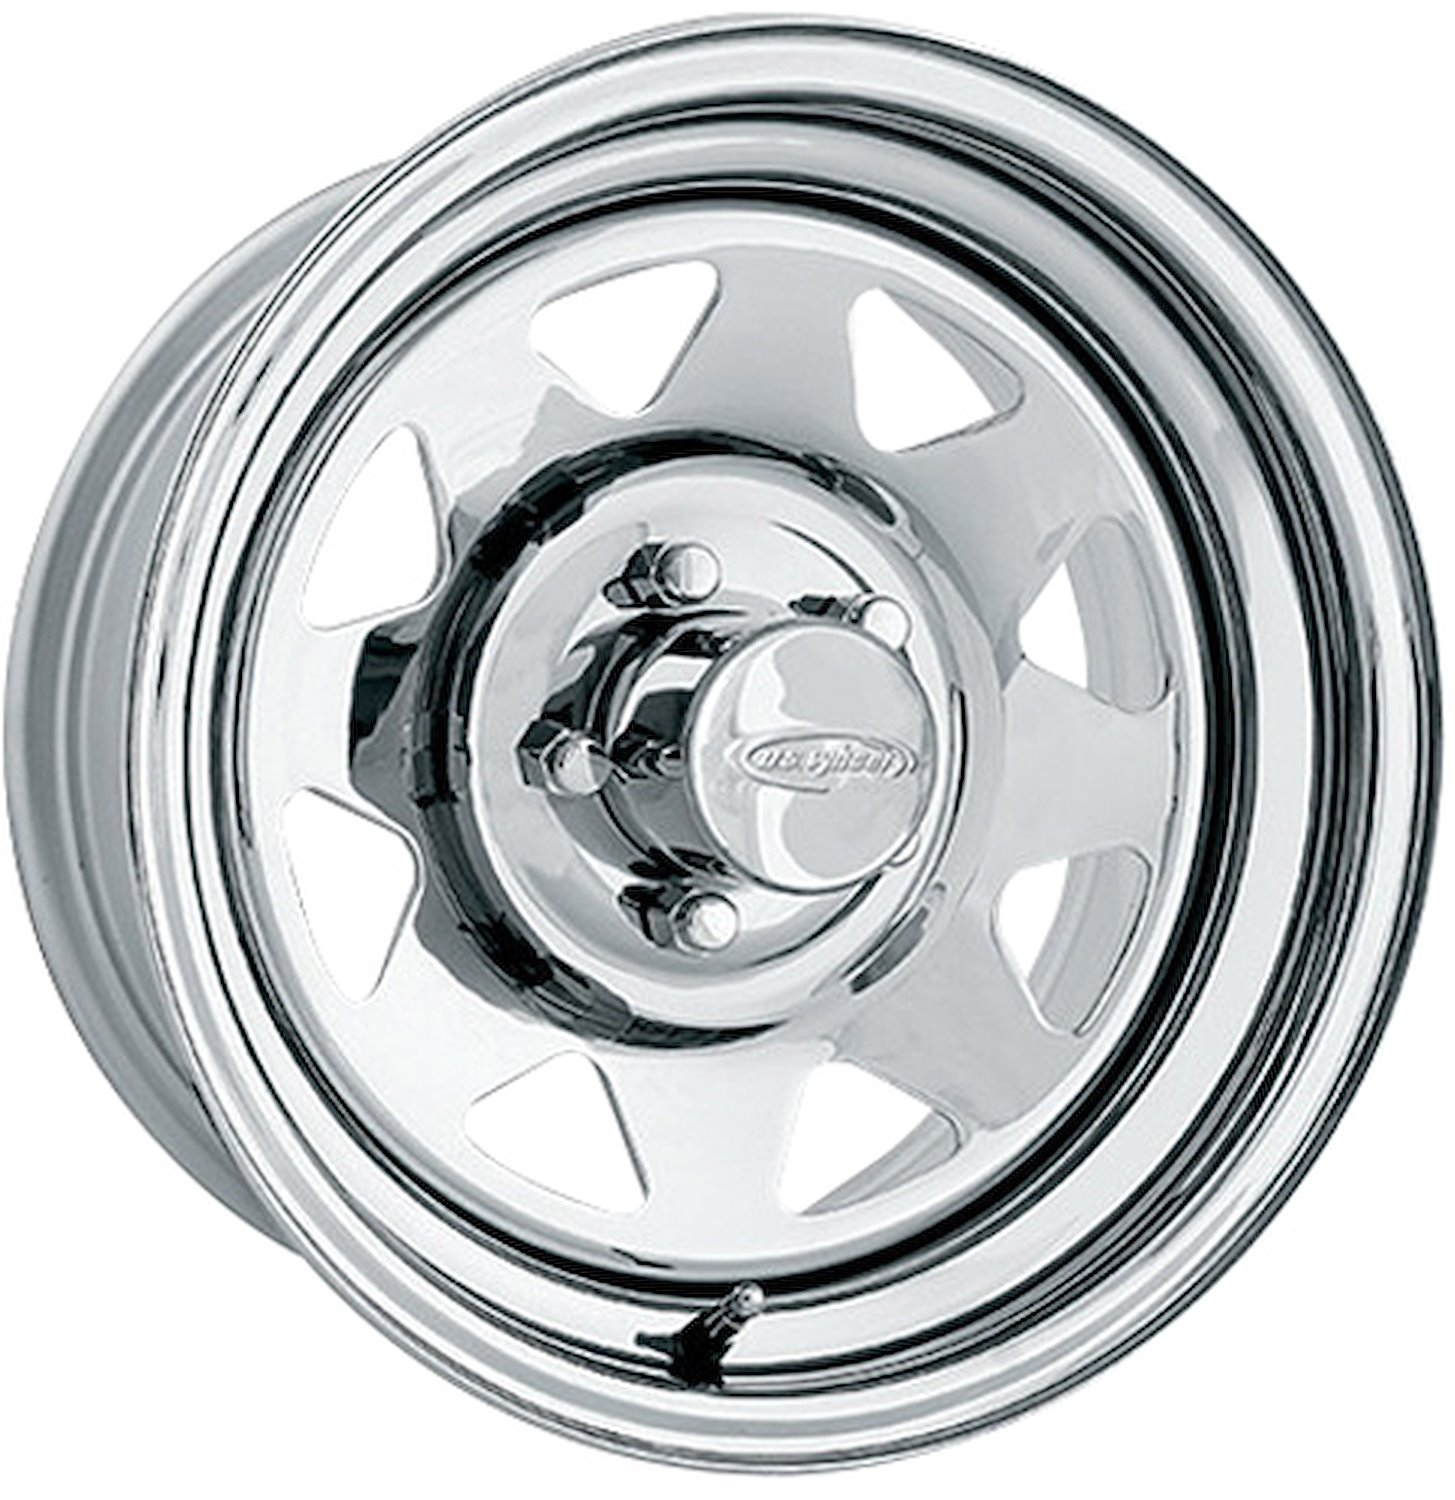 Chrome 8 Spoke Wheel (Series 75) Size: 16.5" x 8.25"